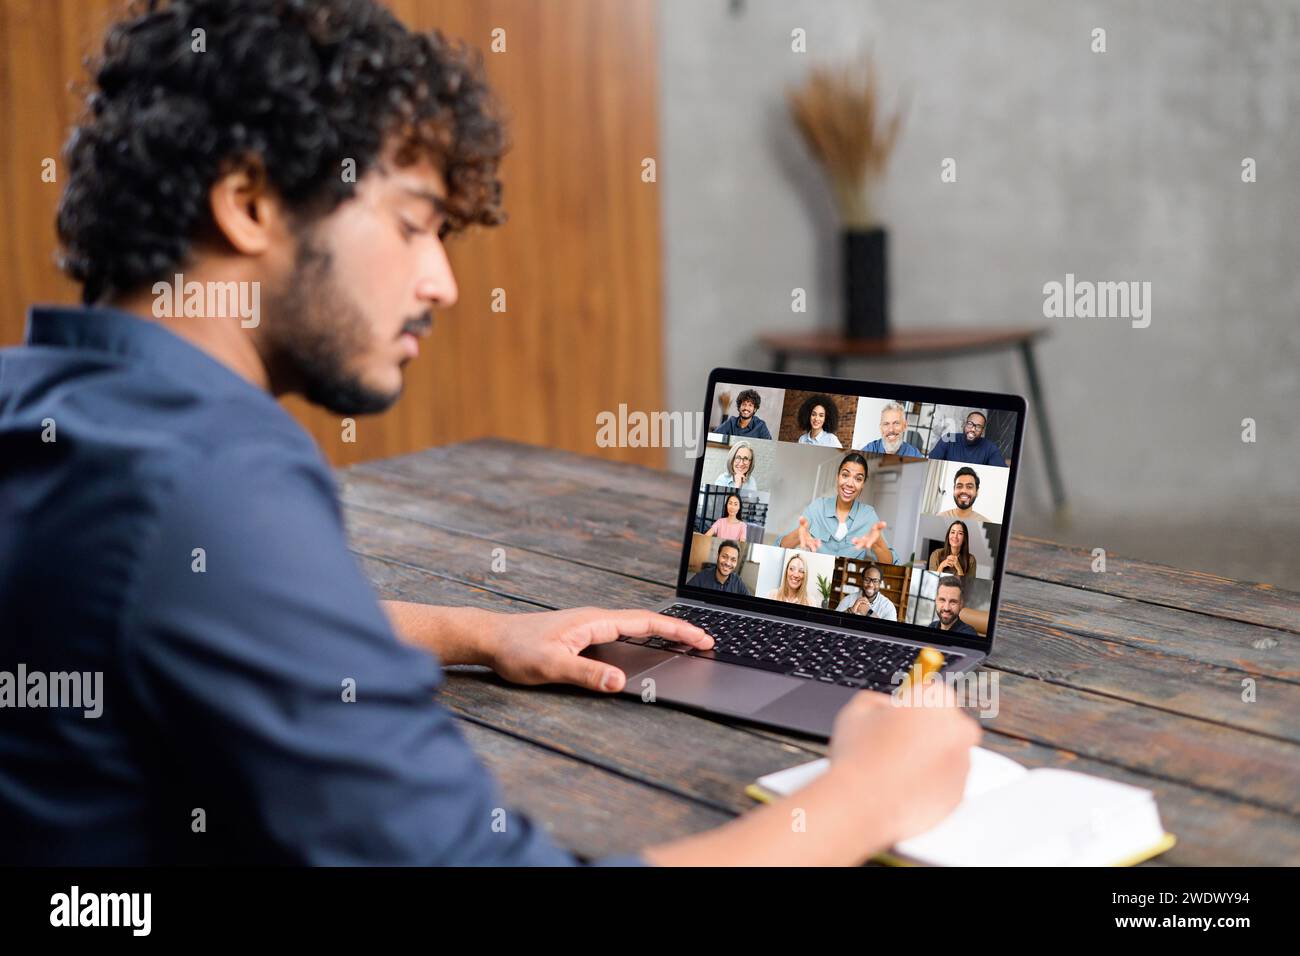 Ein konzentrierter indischer Mann sitzt an einem hölzernen Schreibtisch und nimmt an einer Videokonferenz auf seinem Laptop Teil. Er ist bereit, wichtige Punkte zu notieren und die interaktive Natur der Fernkommunikation zu demonstrieren Stockfoto